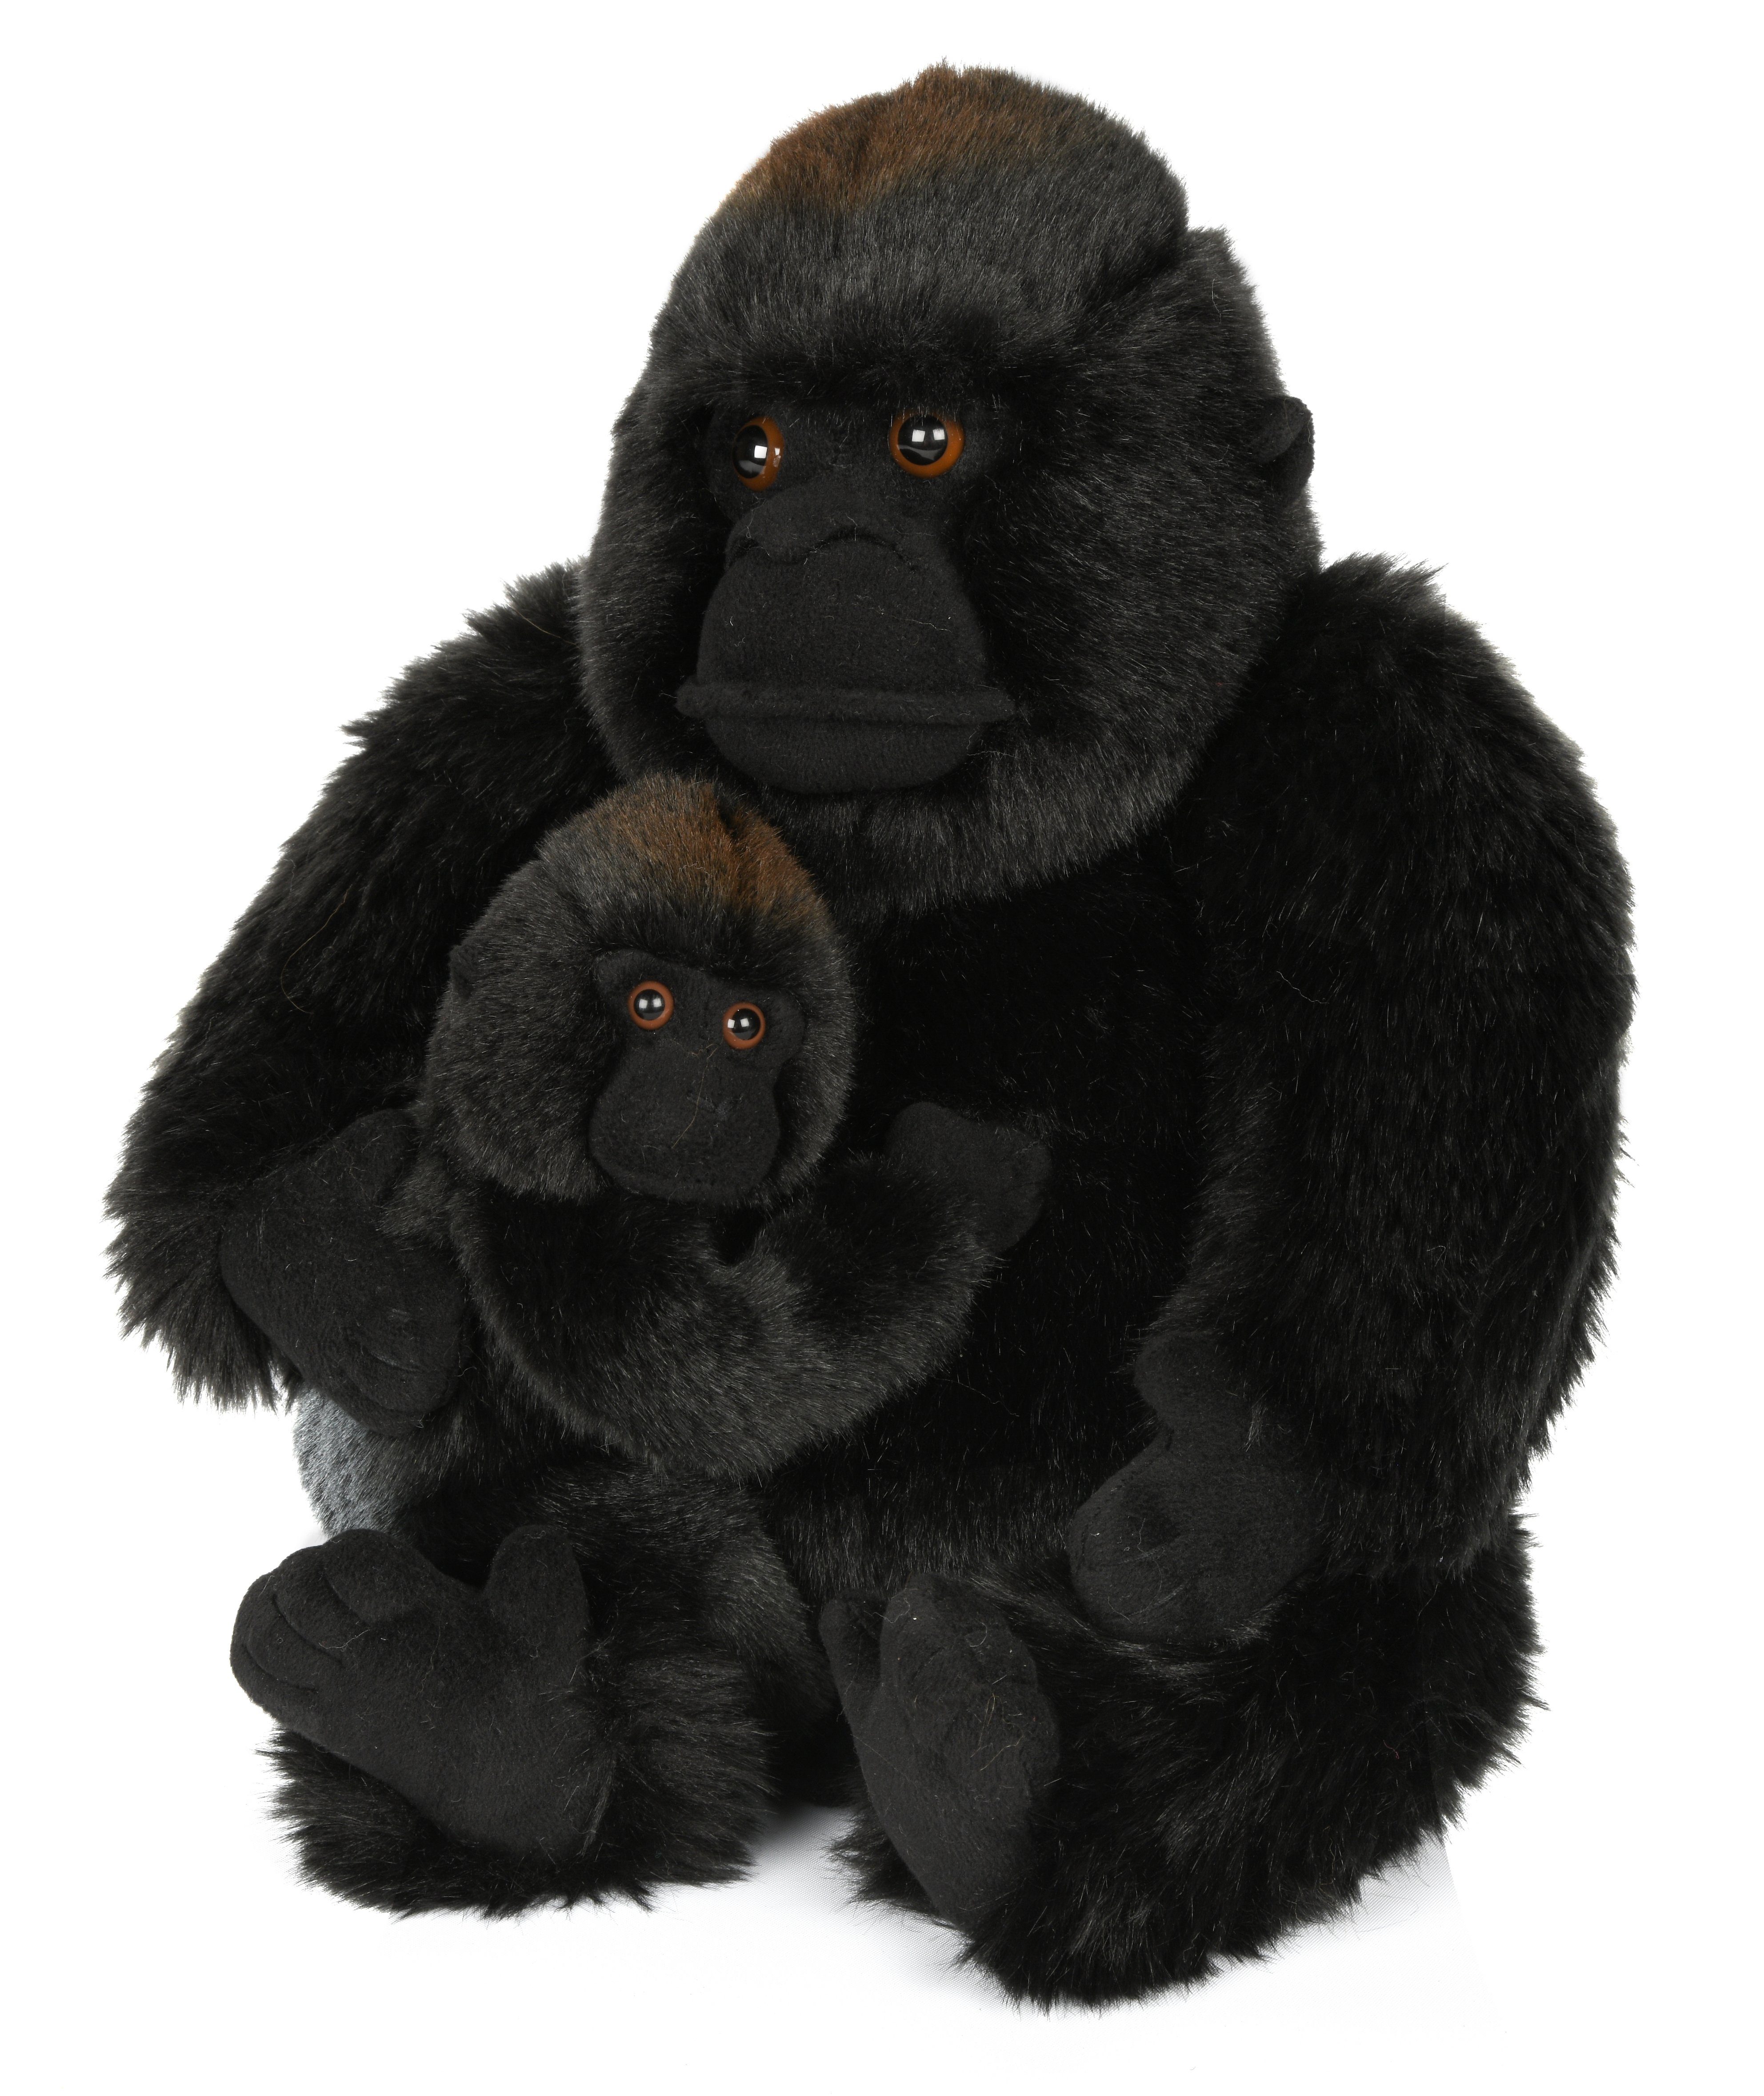 Gorilla Kuscheltier 16 cm 